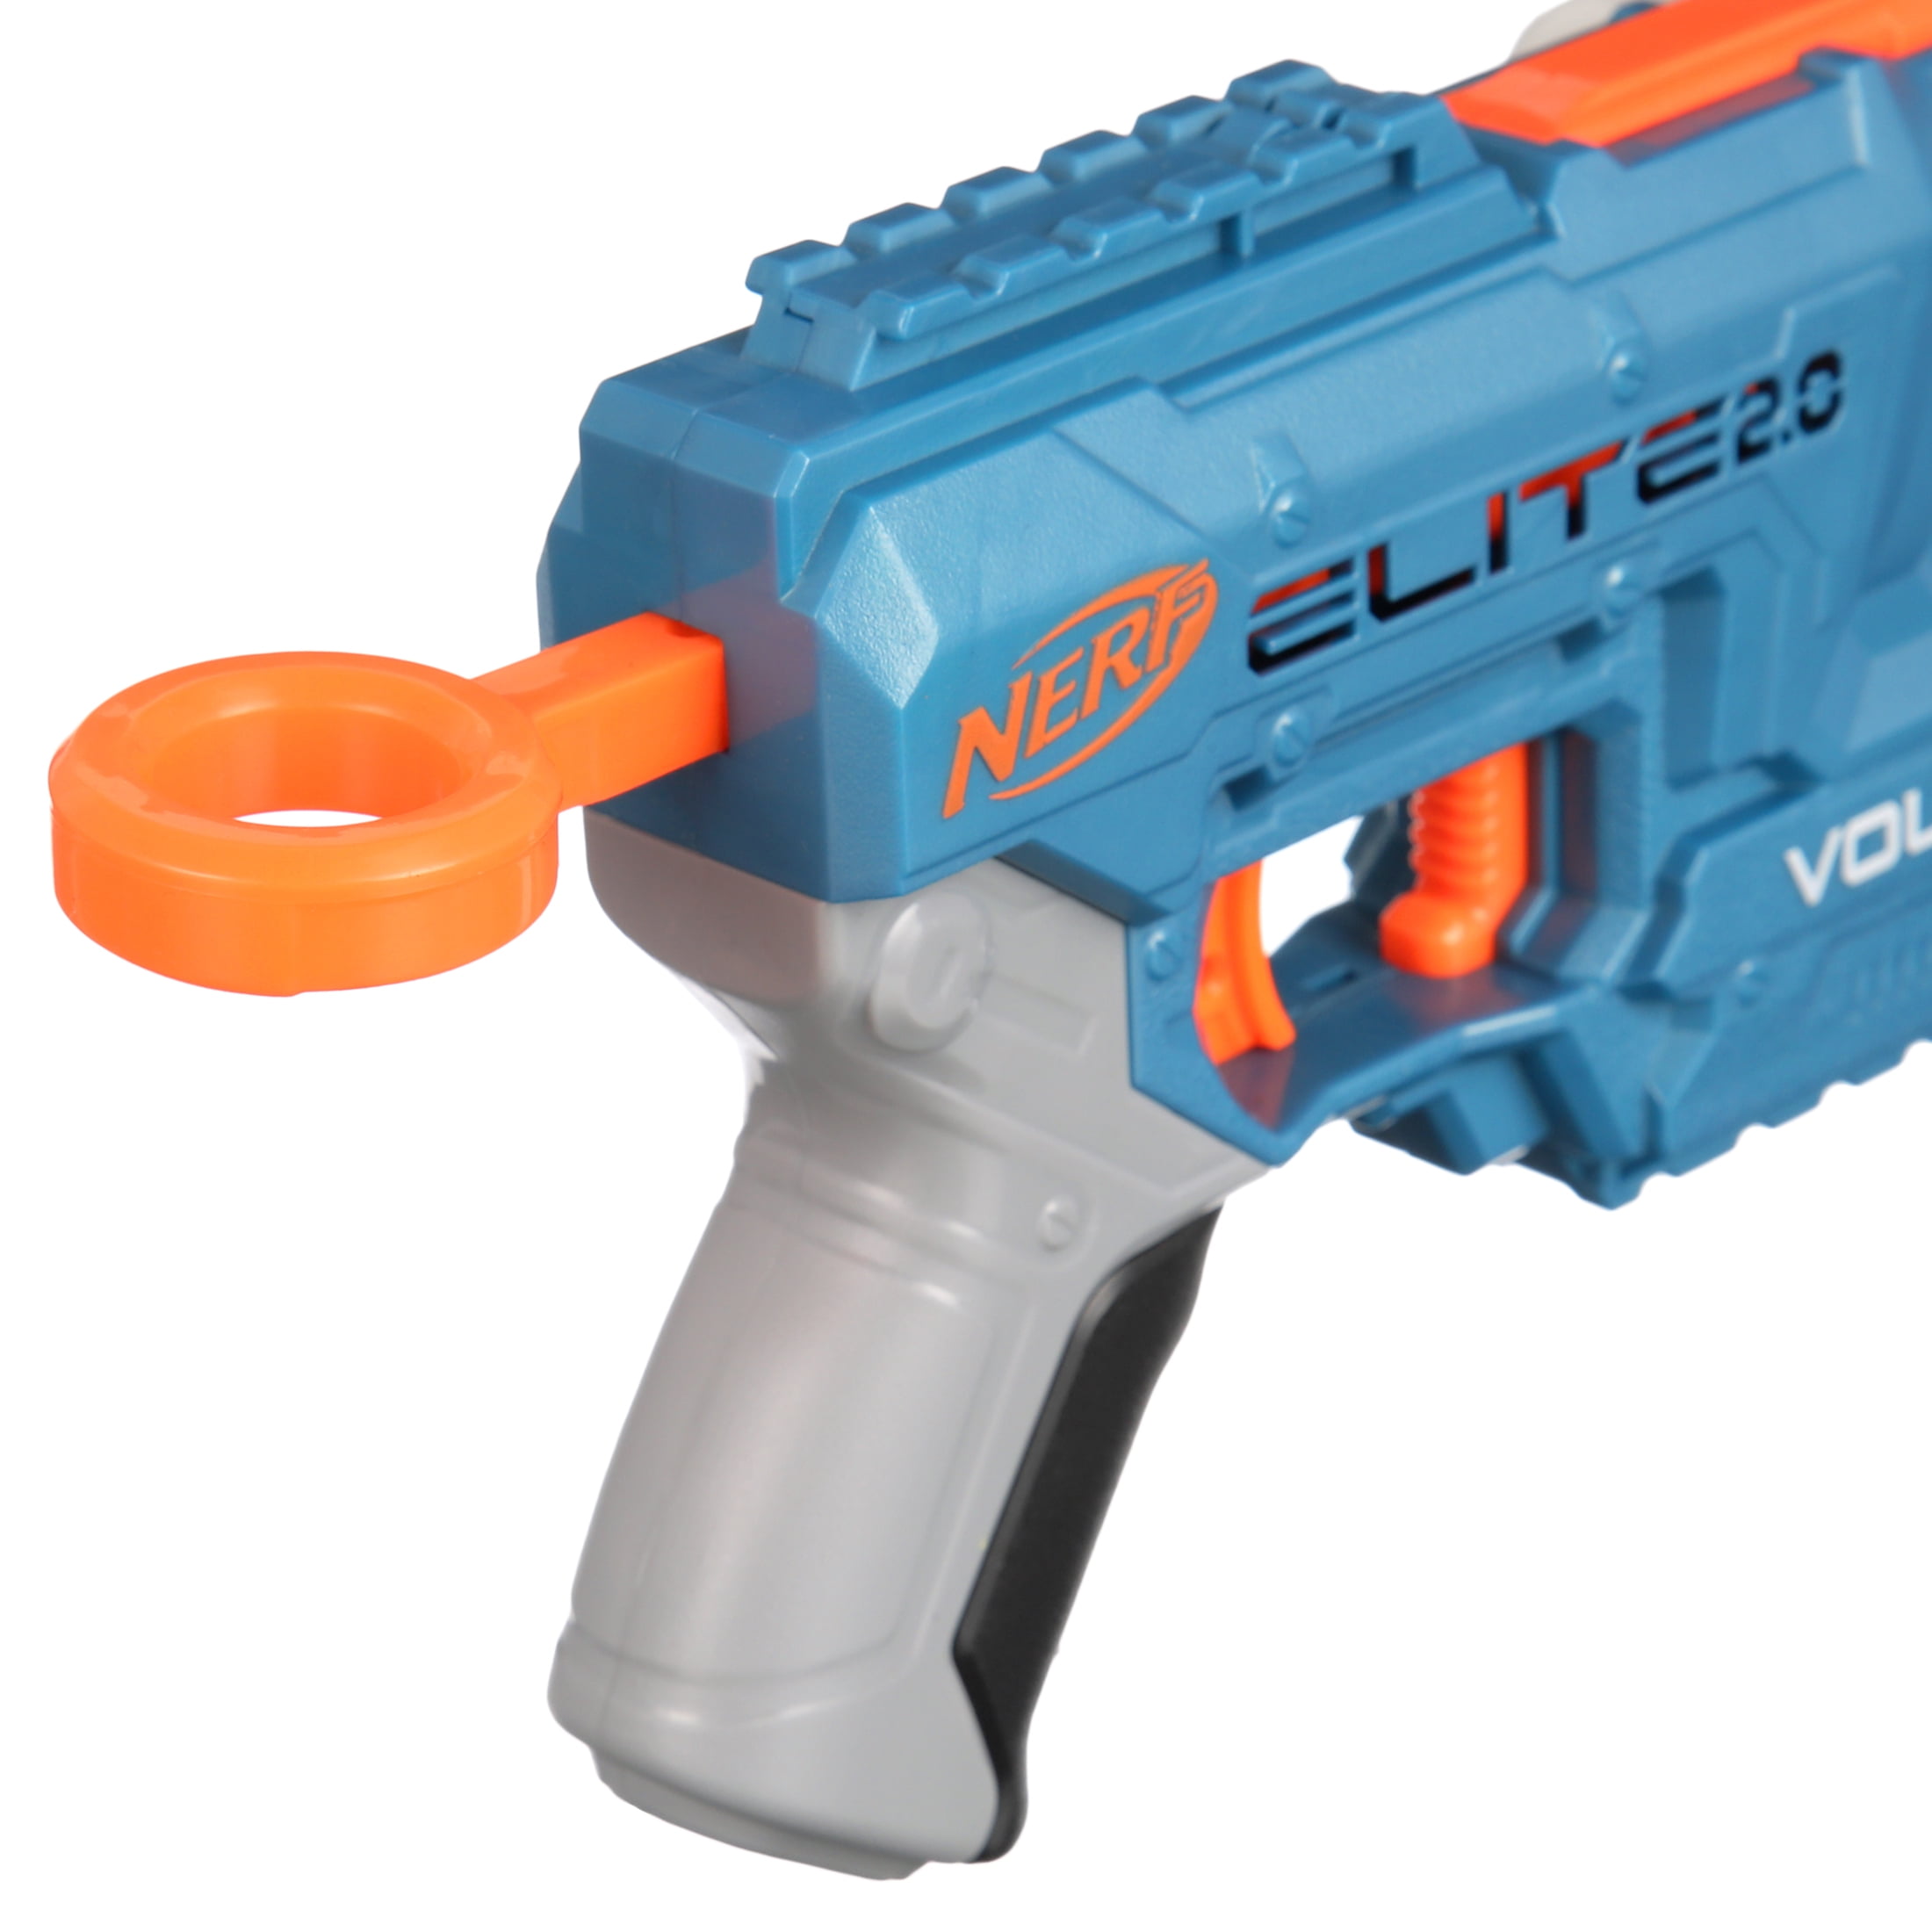 Nerf Elite 2.0 Volt SD-1 Kids Toy Blaster with 6 Darts